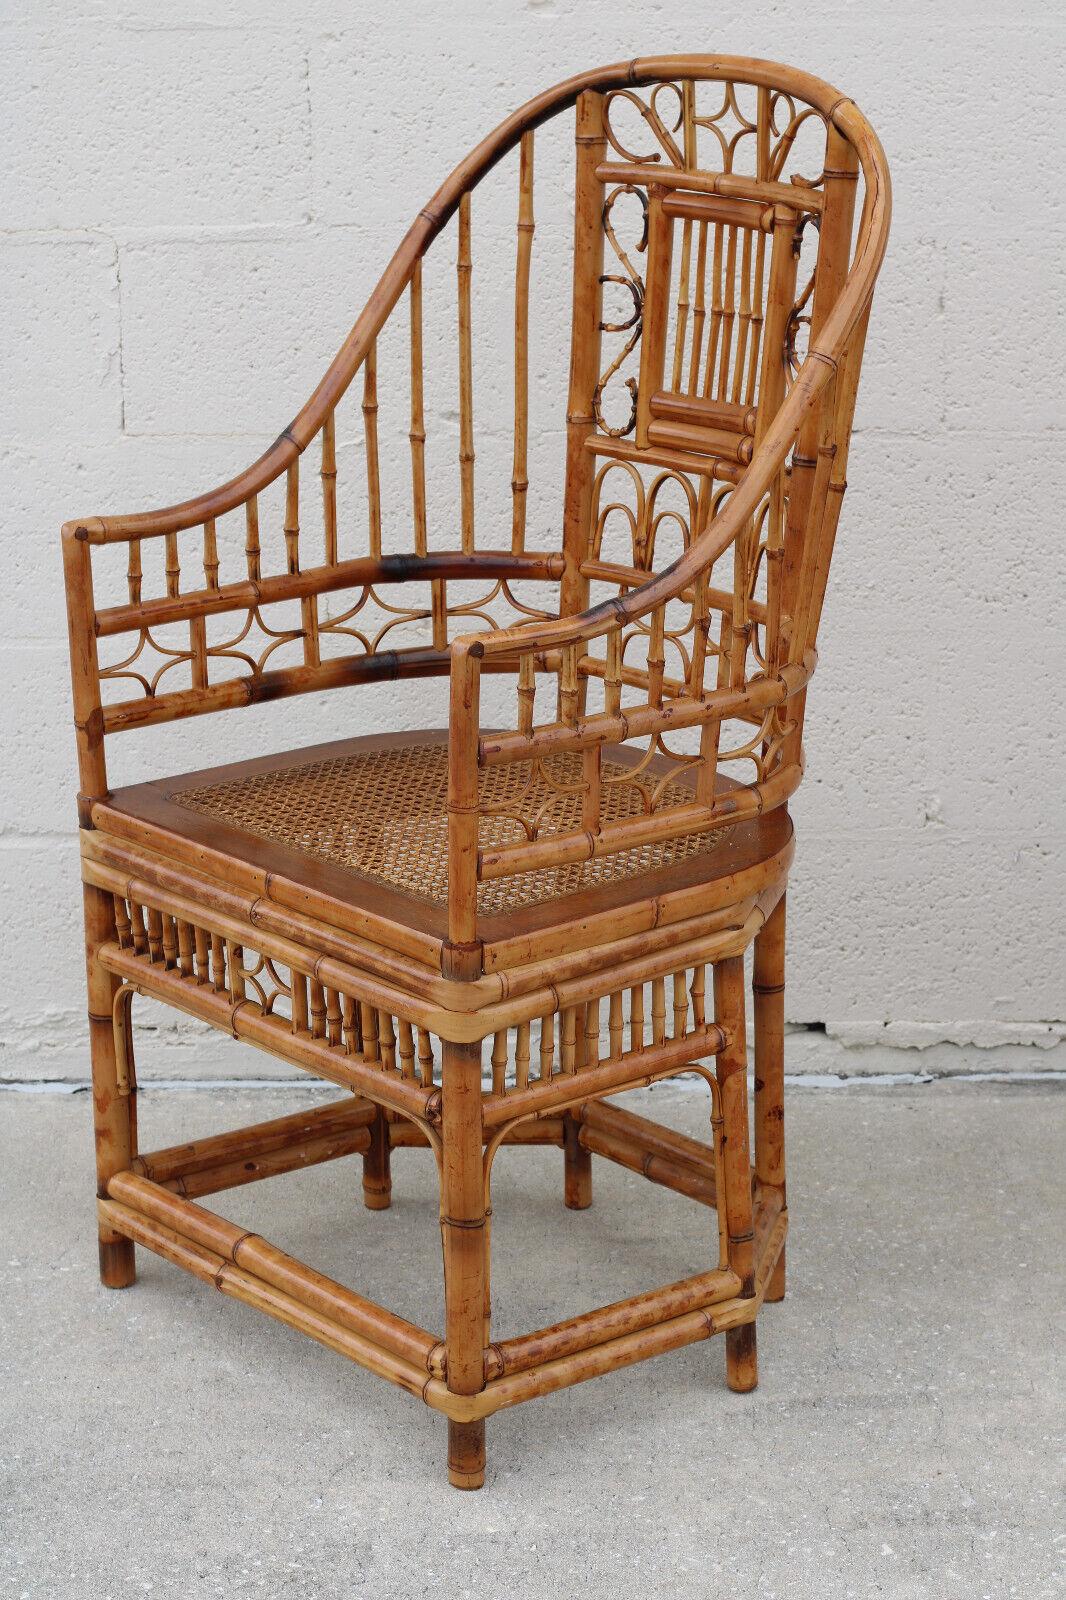 Fabuleuse paire de fauteuils à haut dossier en bambou brûlé, avec des cadres en forme de fer à cheval, dans le style Brighton Pavilion. Ces grandes chaises Chippendale chinoises magnifiquement fabriquées à la main présentent une finition en écaille